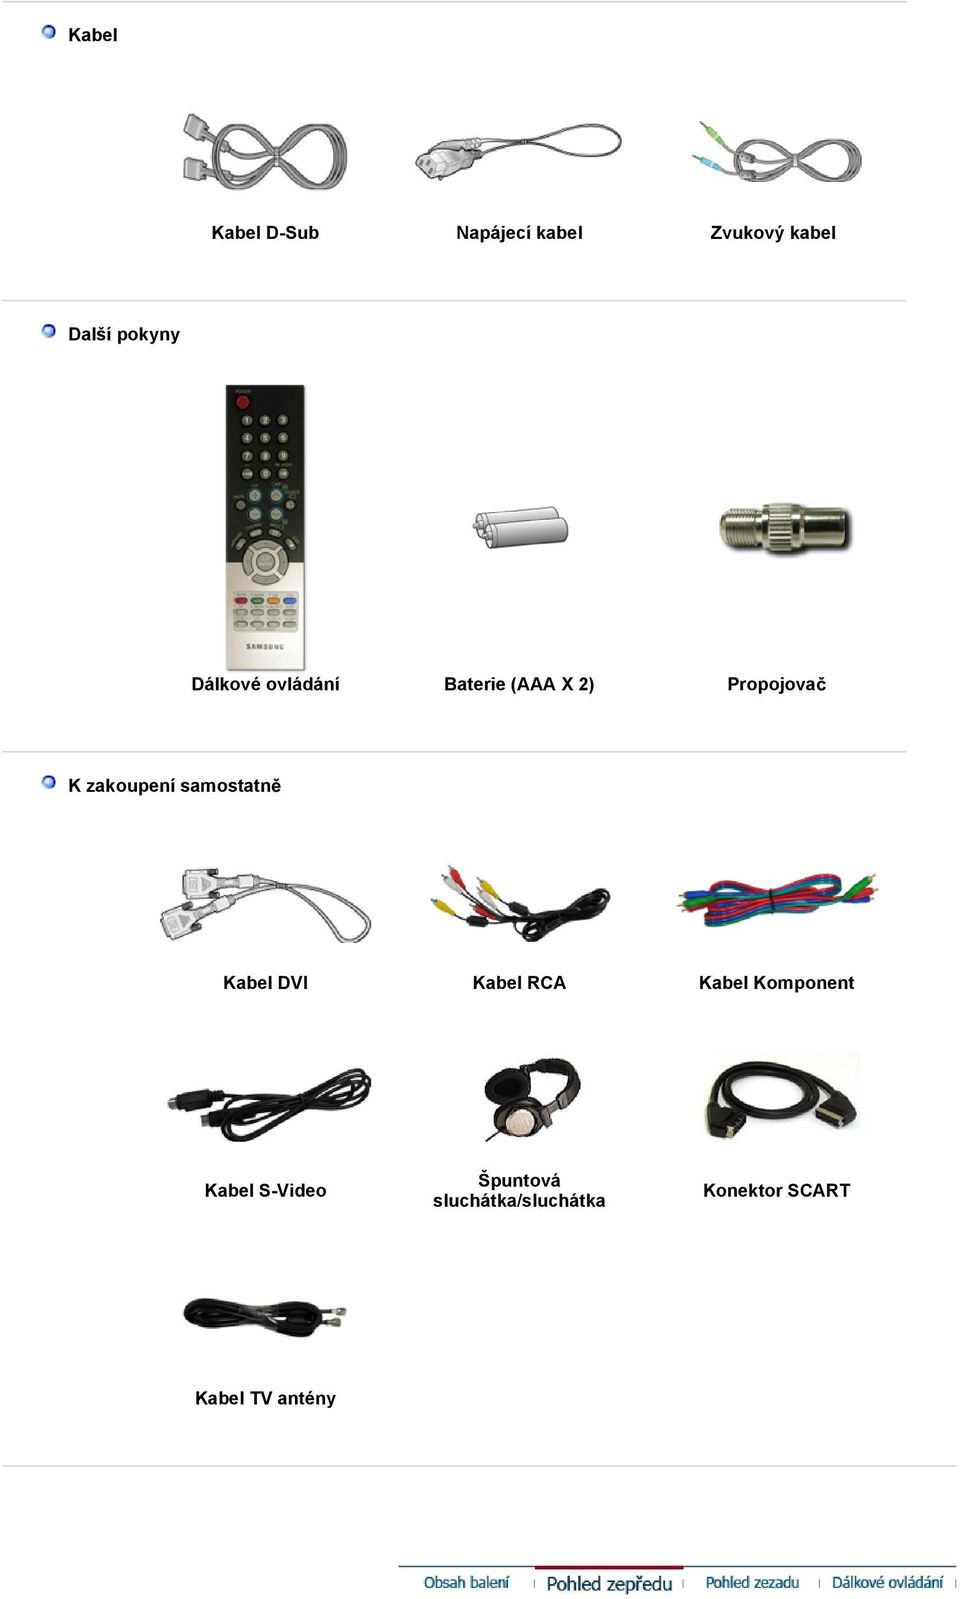 zakoupení samostatn Kabel DVI Kabel RCA Kabel Komponent